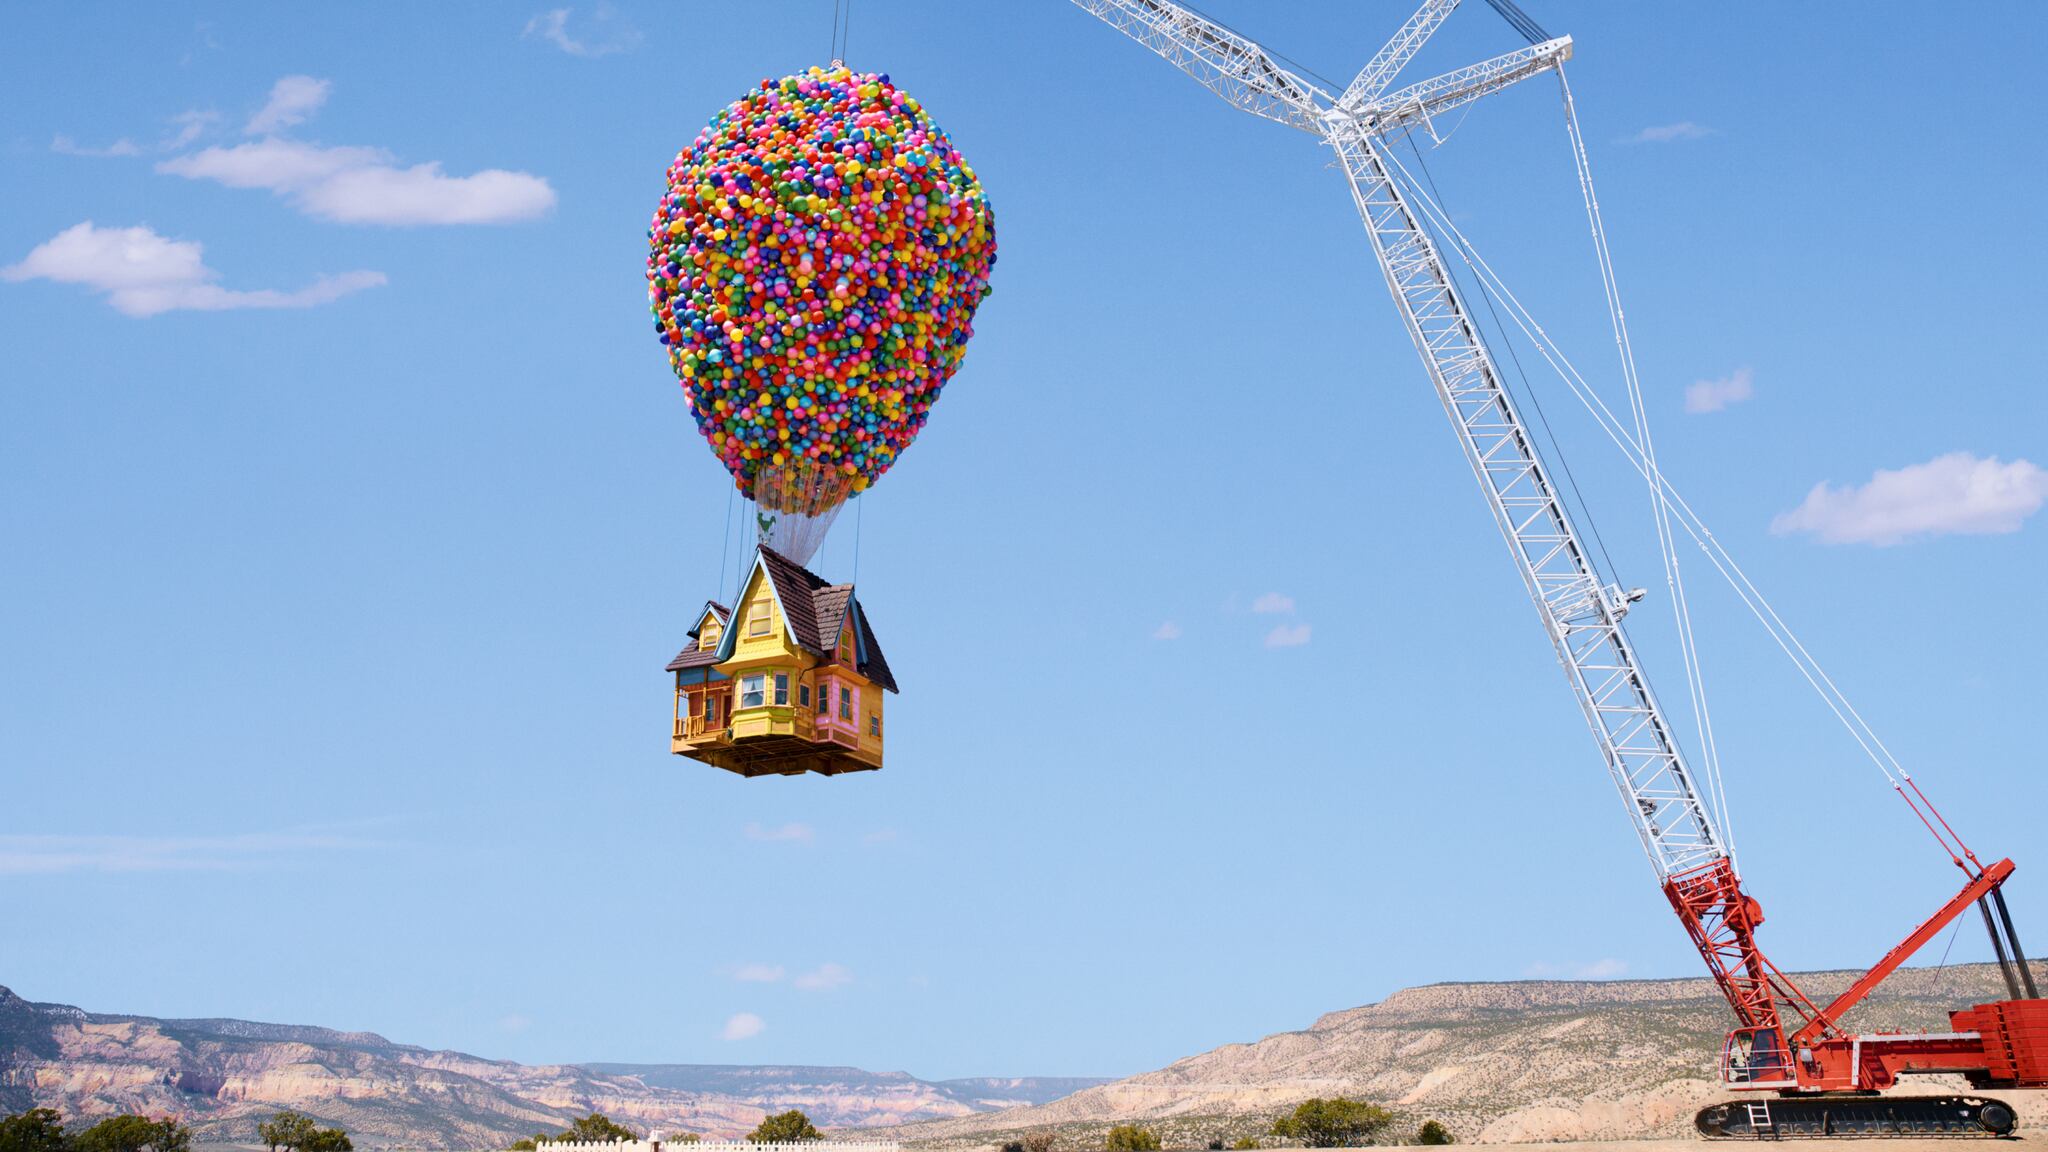 La recreación de la casa de la película 'Up' de Disney Pixar